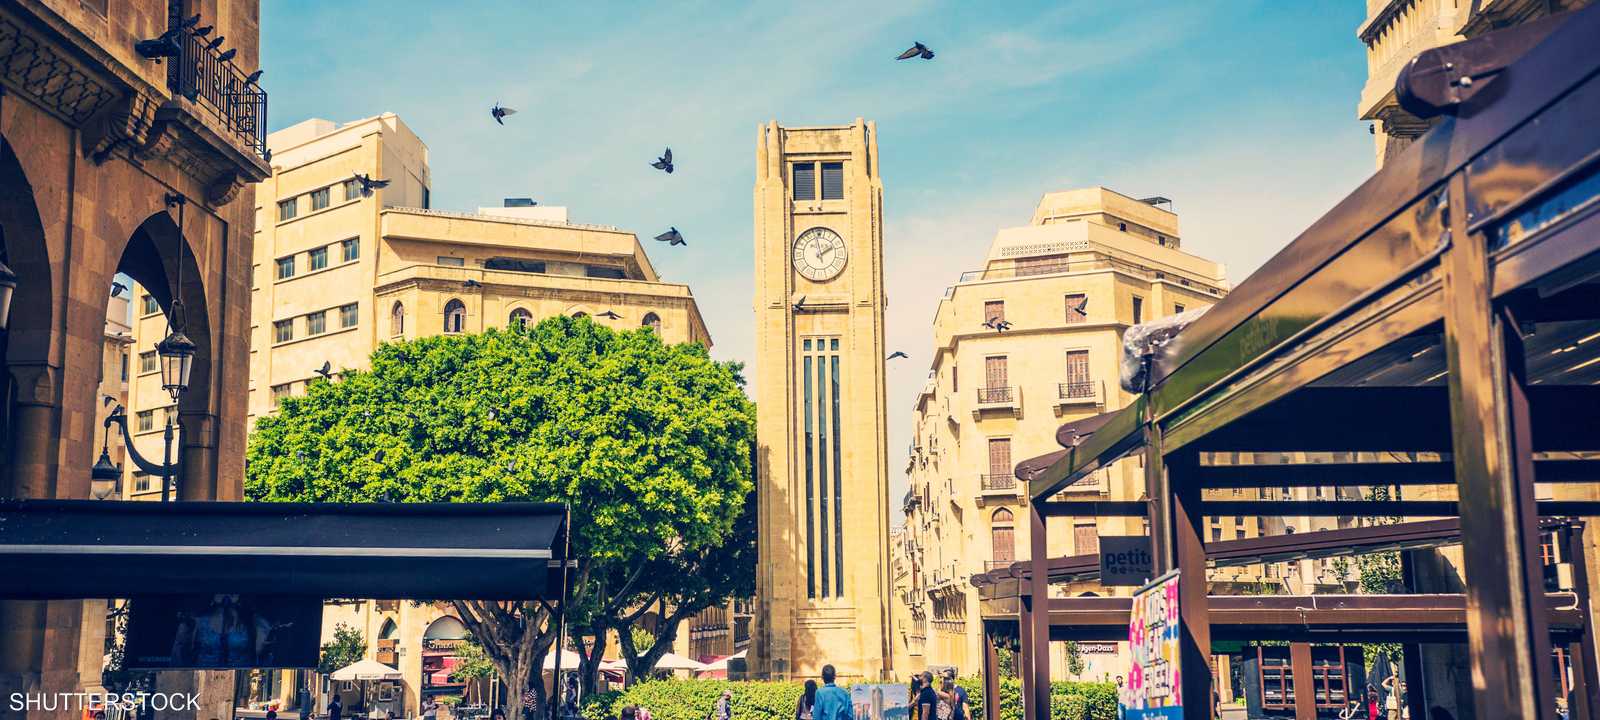 اقتصاد لبنان - بيروت الدان تاون